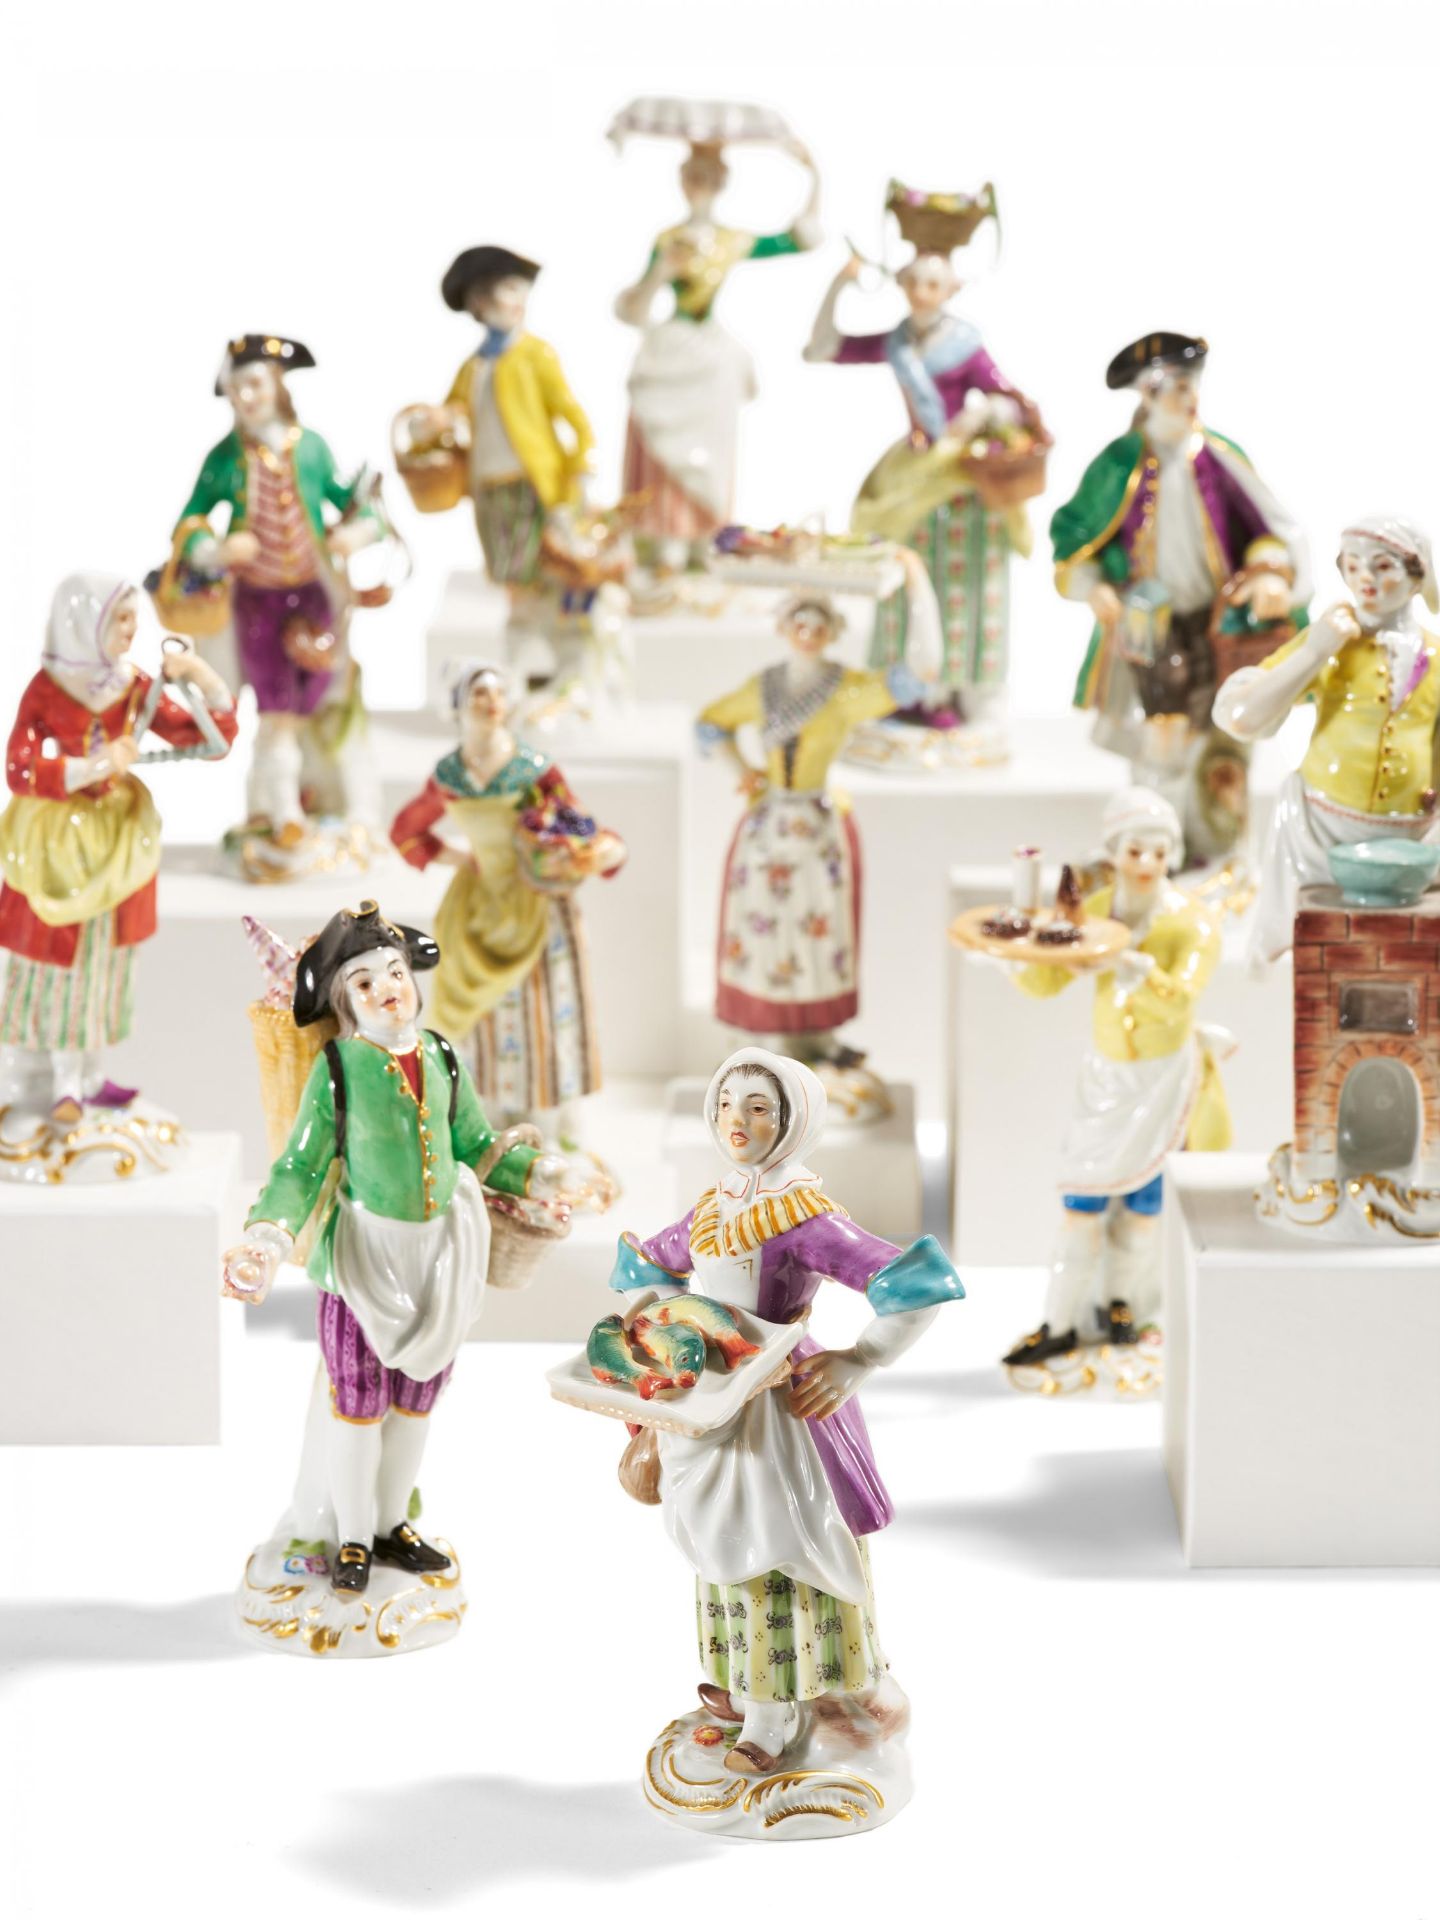 12 porcelain figurines from a series "Cris de Paris"